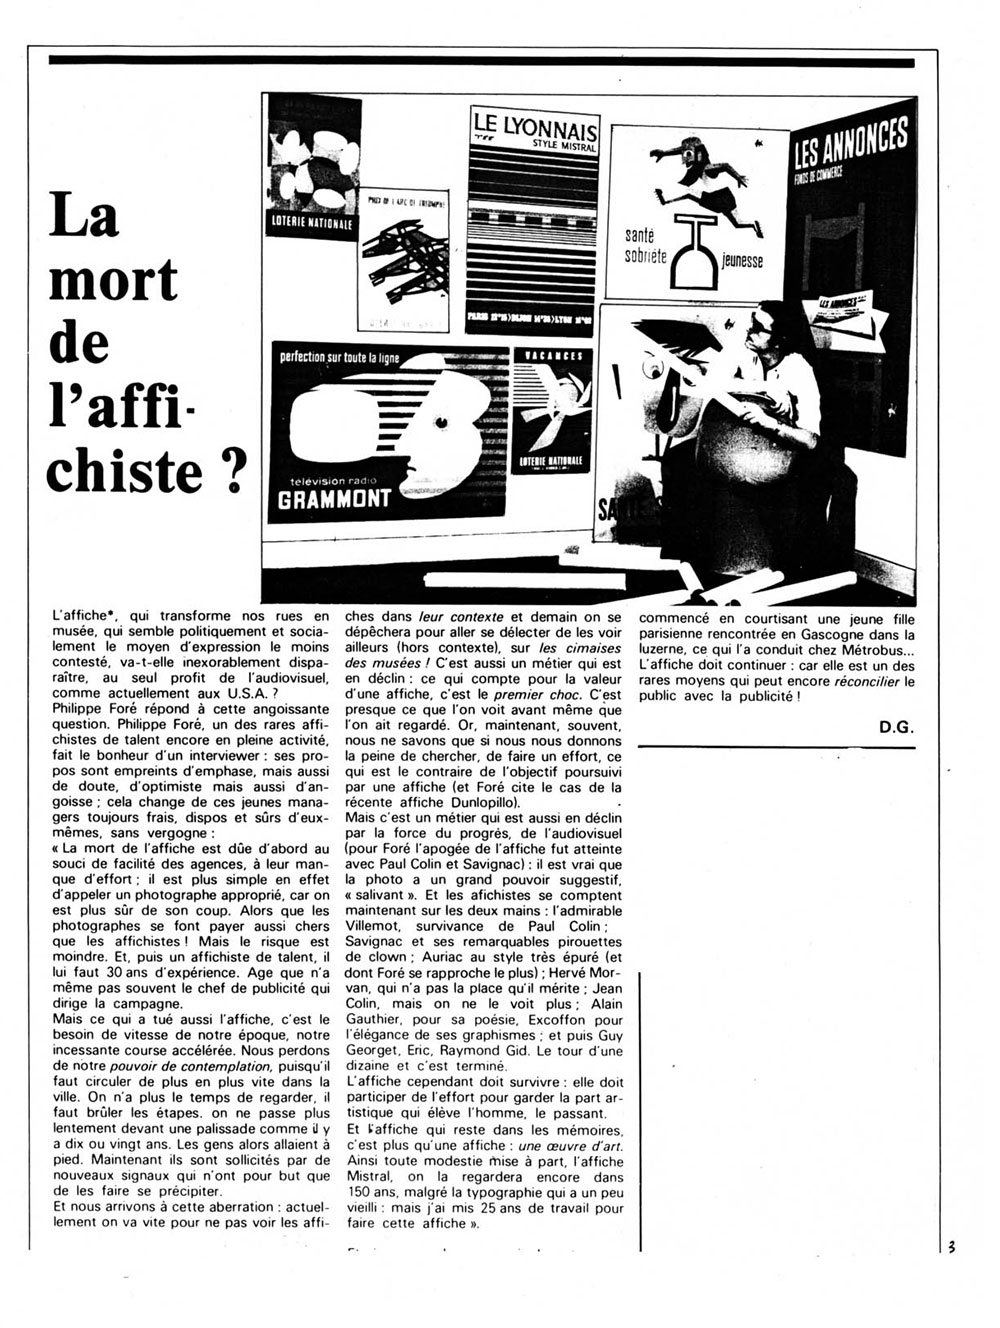 Interview de Foré sur “La mort de l’affichiste”, page 3 de “Publi10, le journal de la publicité”, 1er mars 1977.